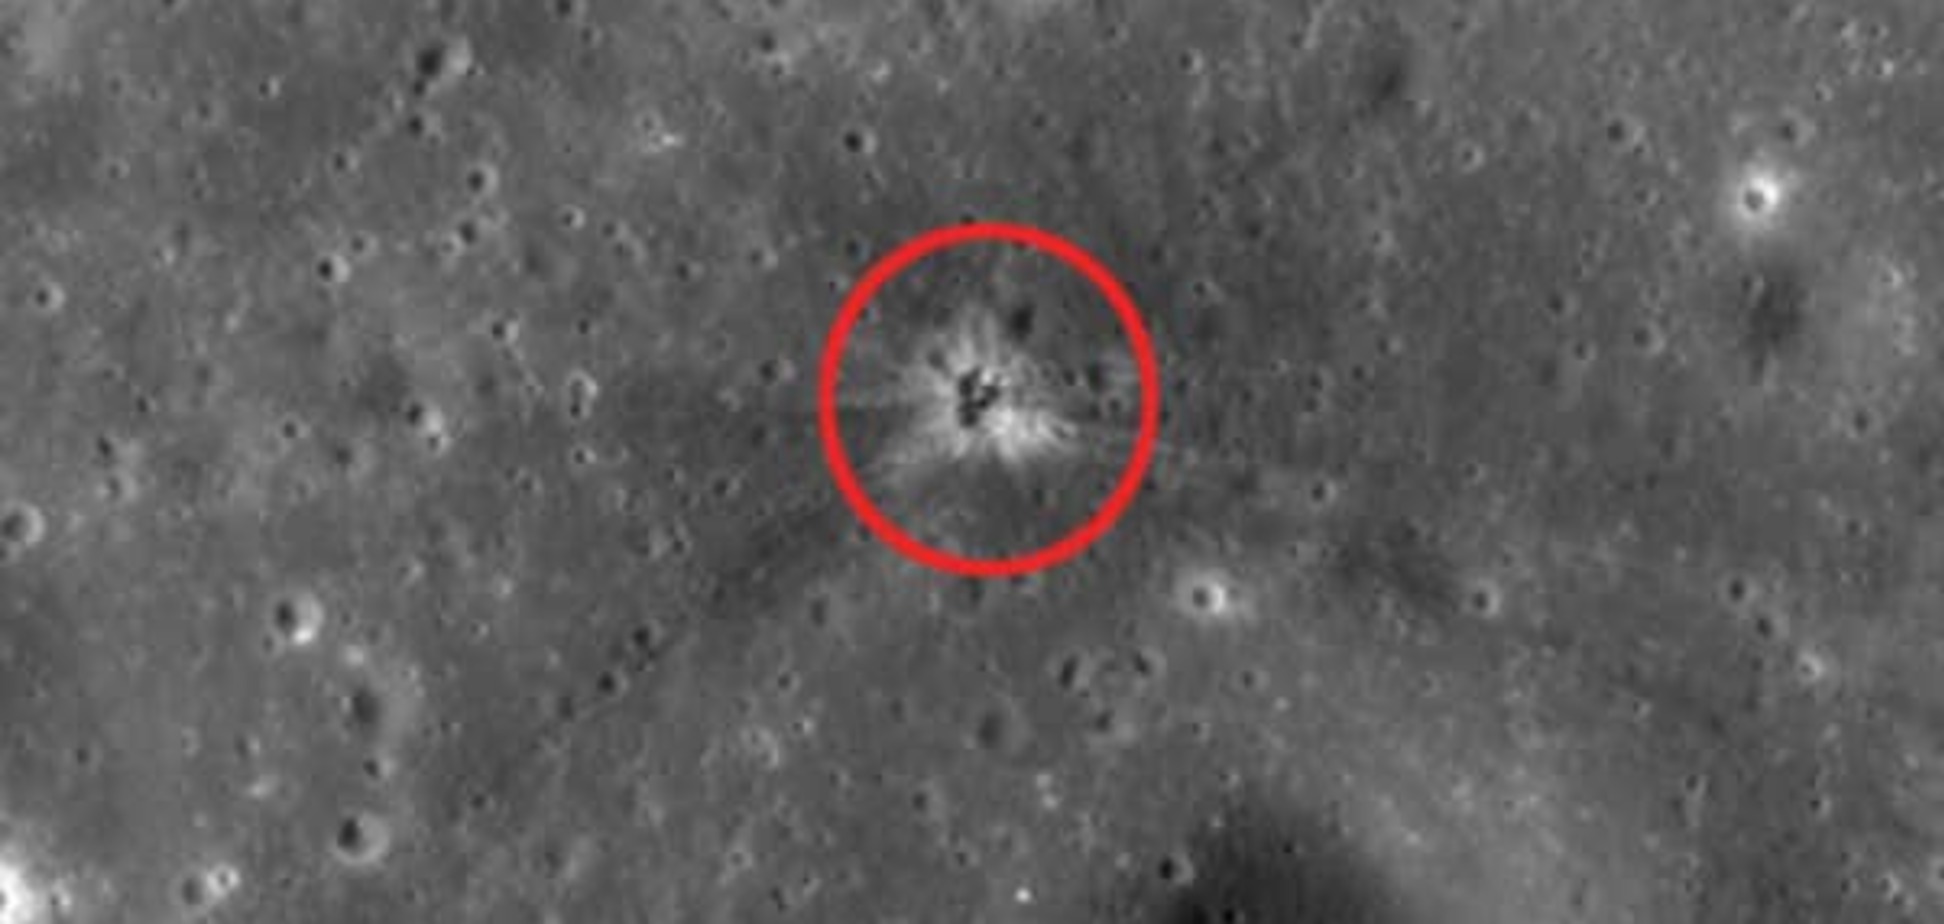 Вчені знайшли на Місяці сліди від 'падіння людини': фотофакт